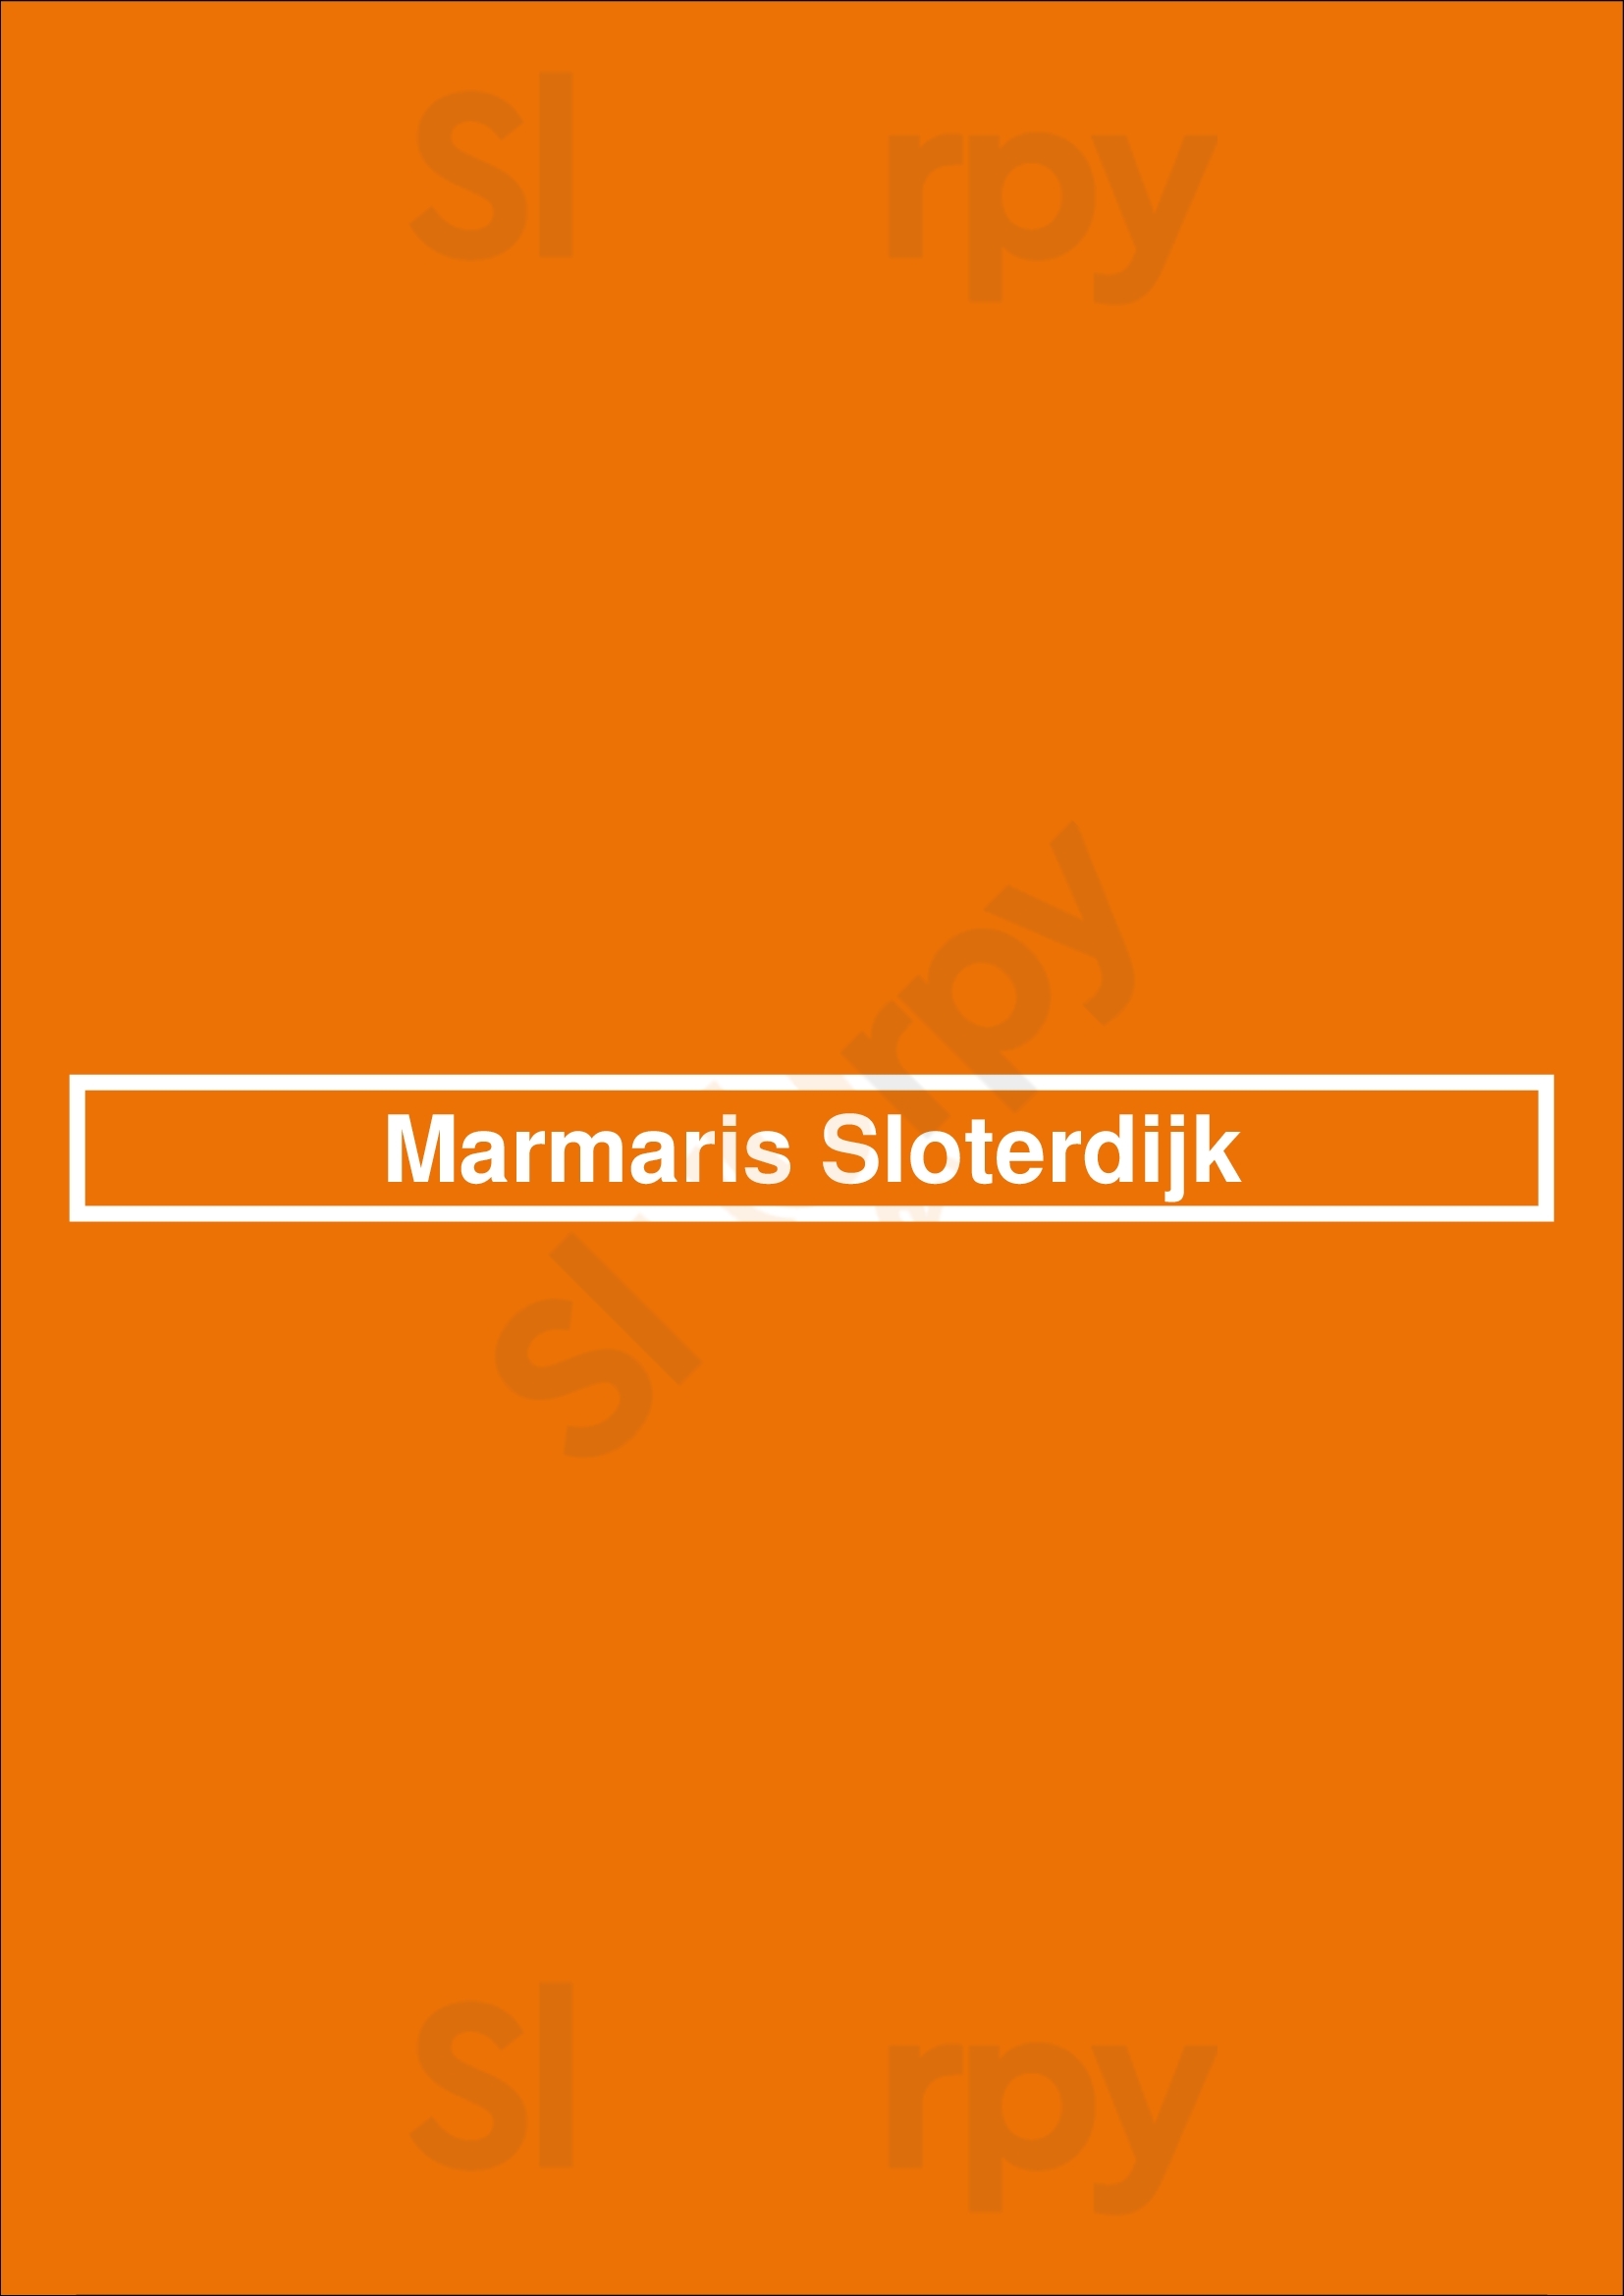 Marmaris Sloterdijk Amsterdam Menu - 1